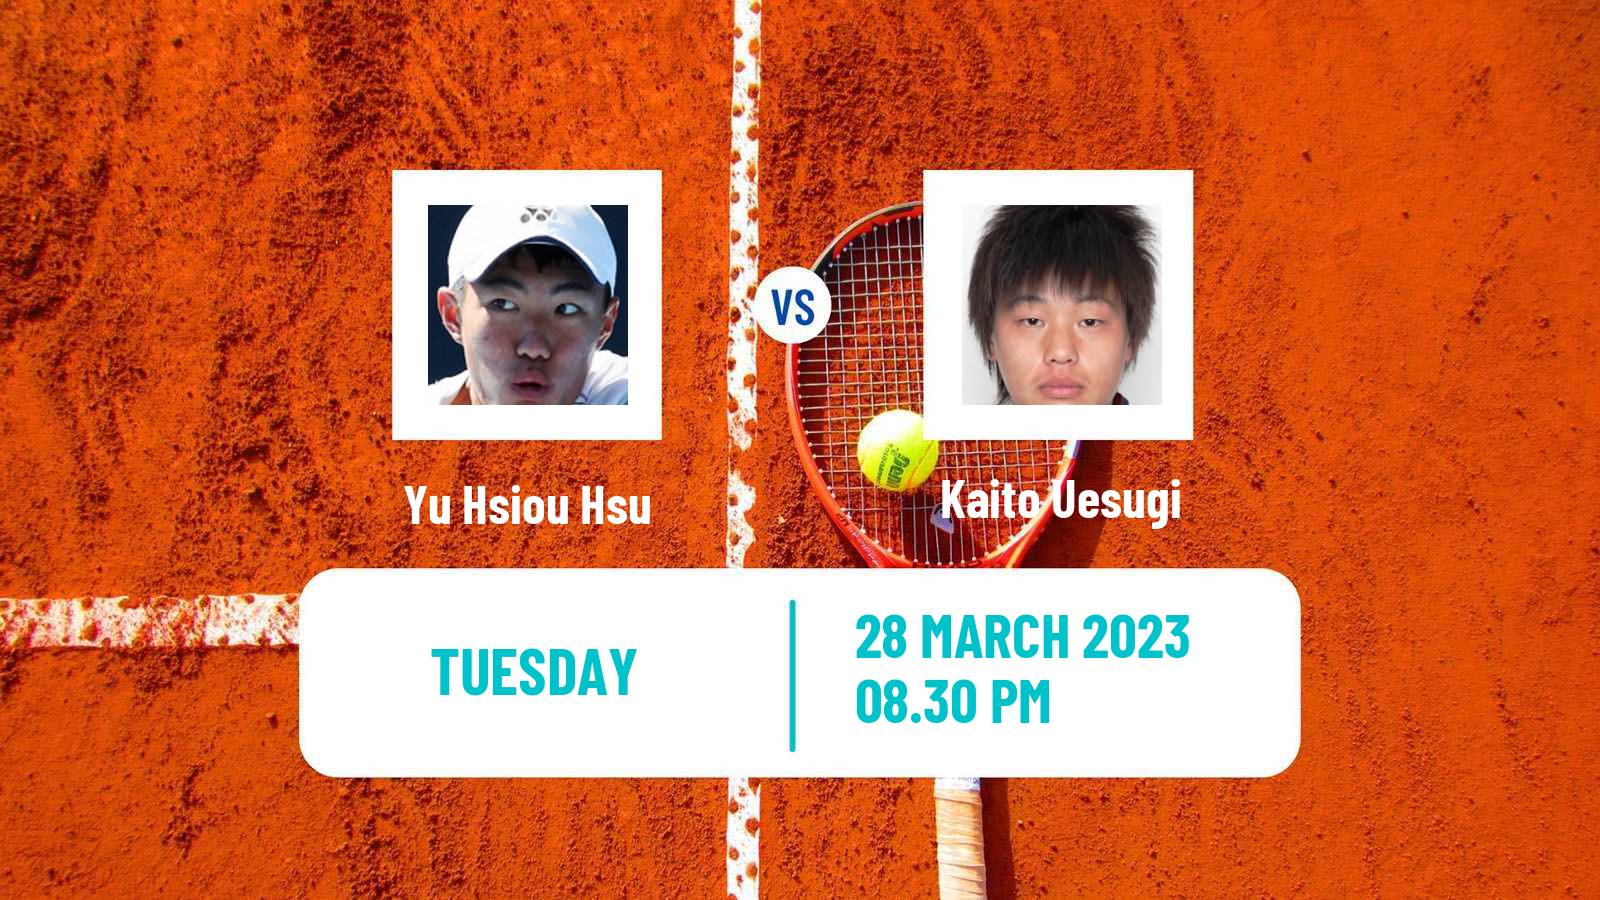 Tennis ITF Tournaments Yu Hsiou Hsu - Kaito Uesugi